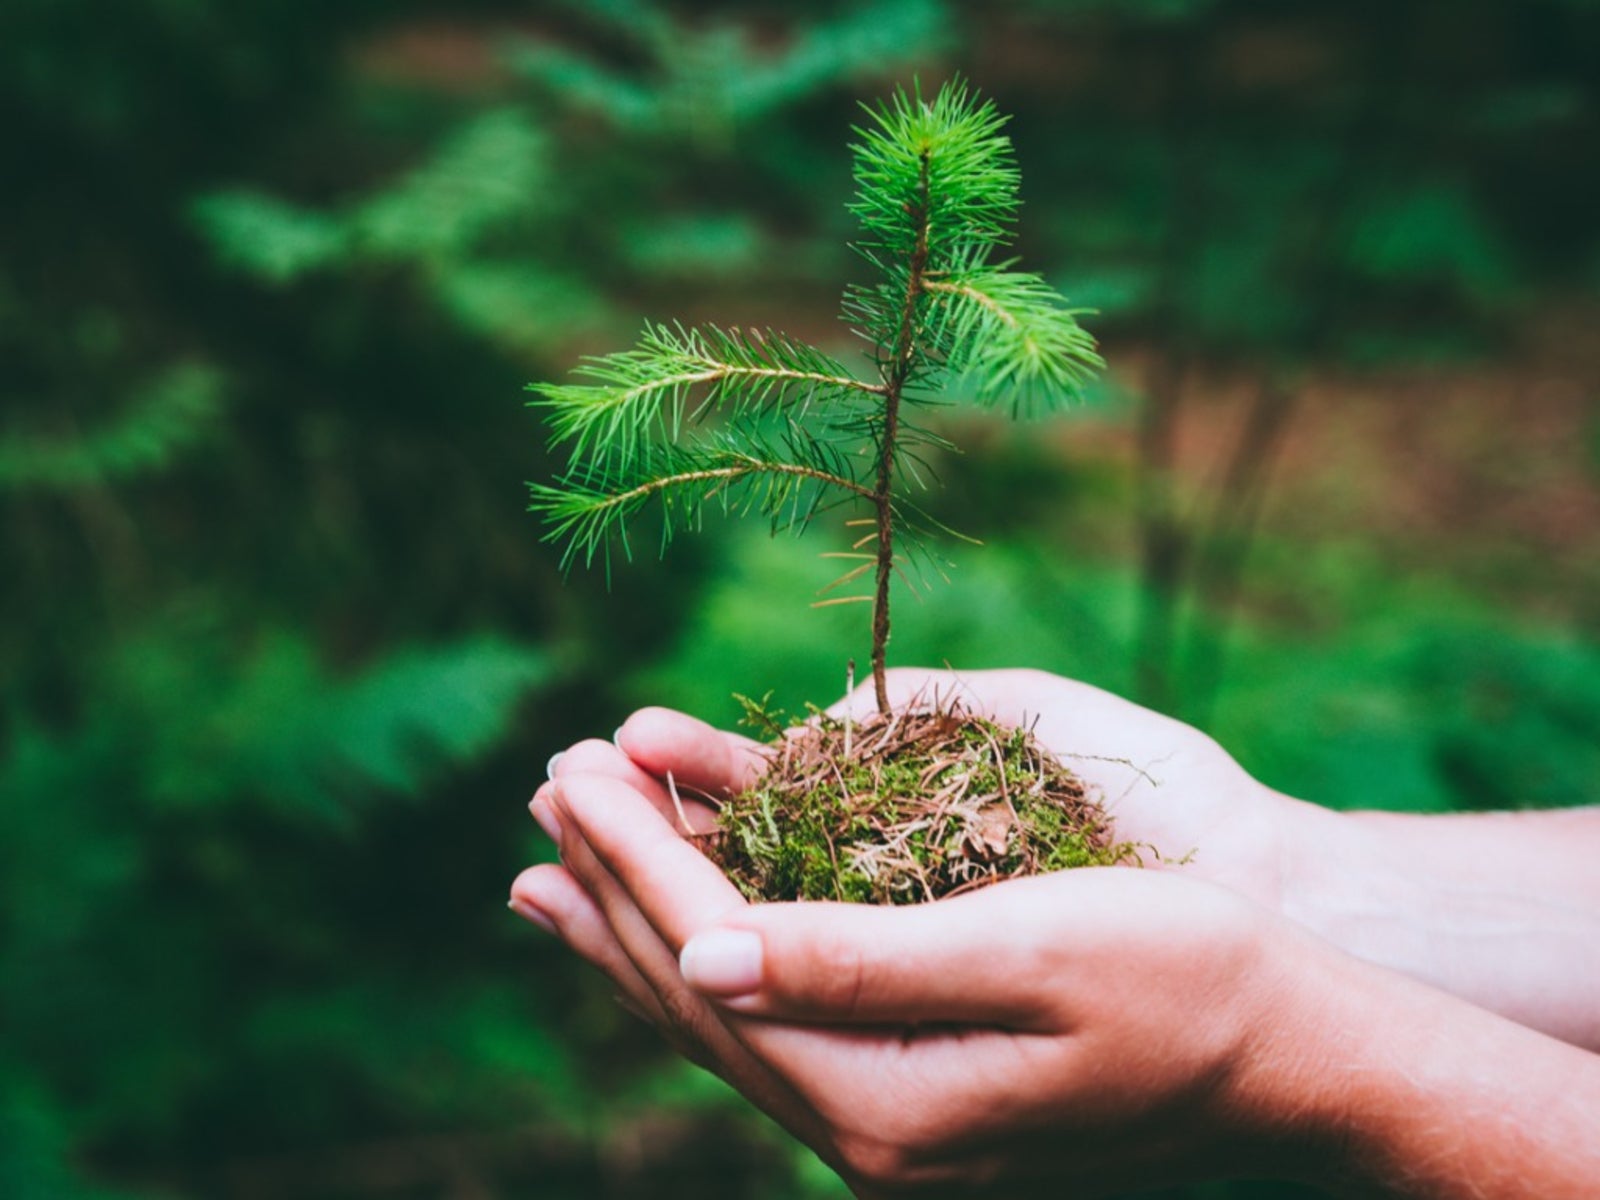 How to Take Care of Mini Pine Trees